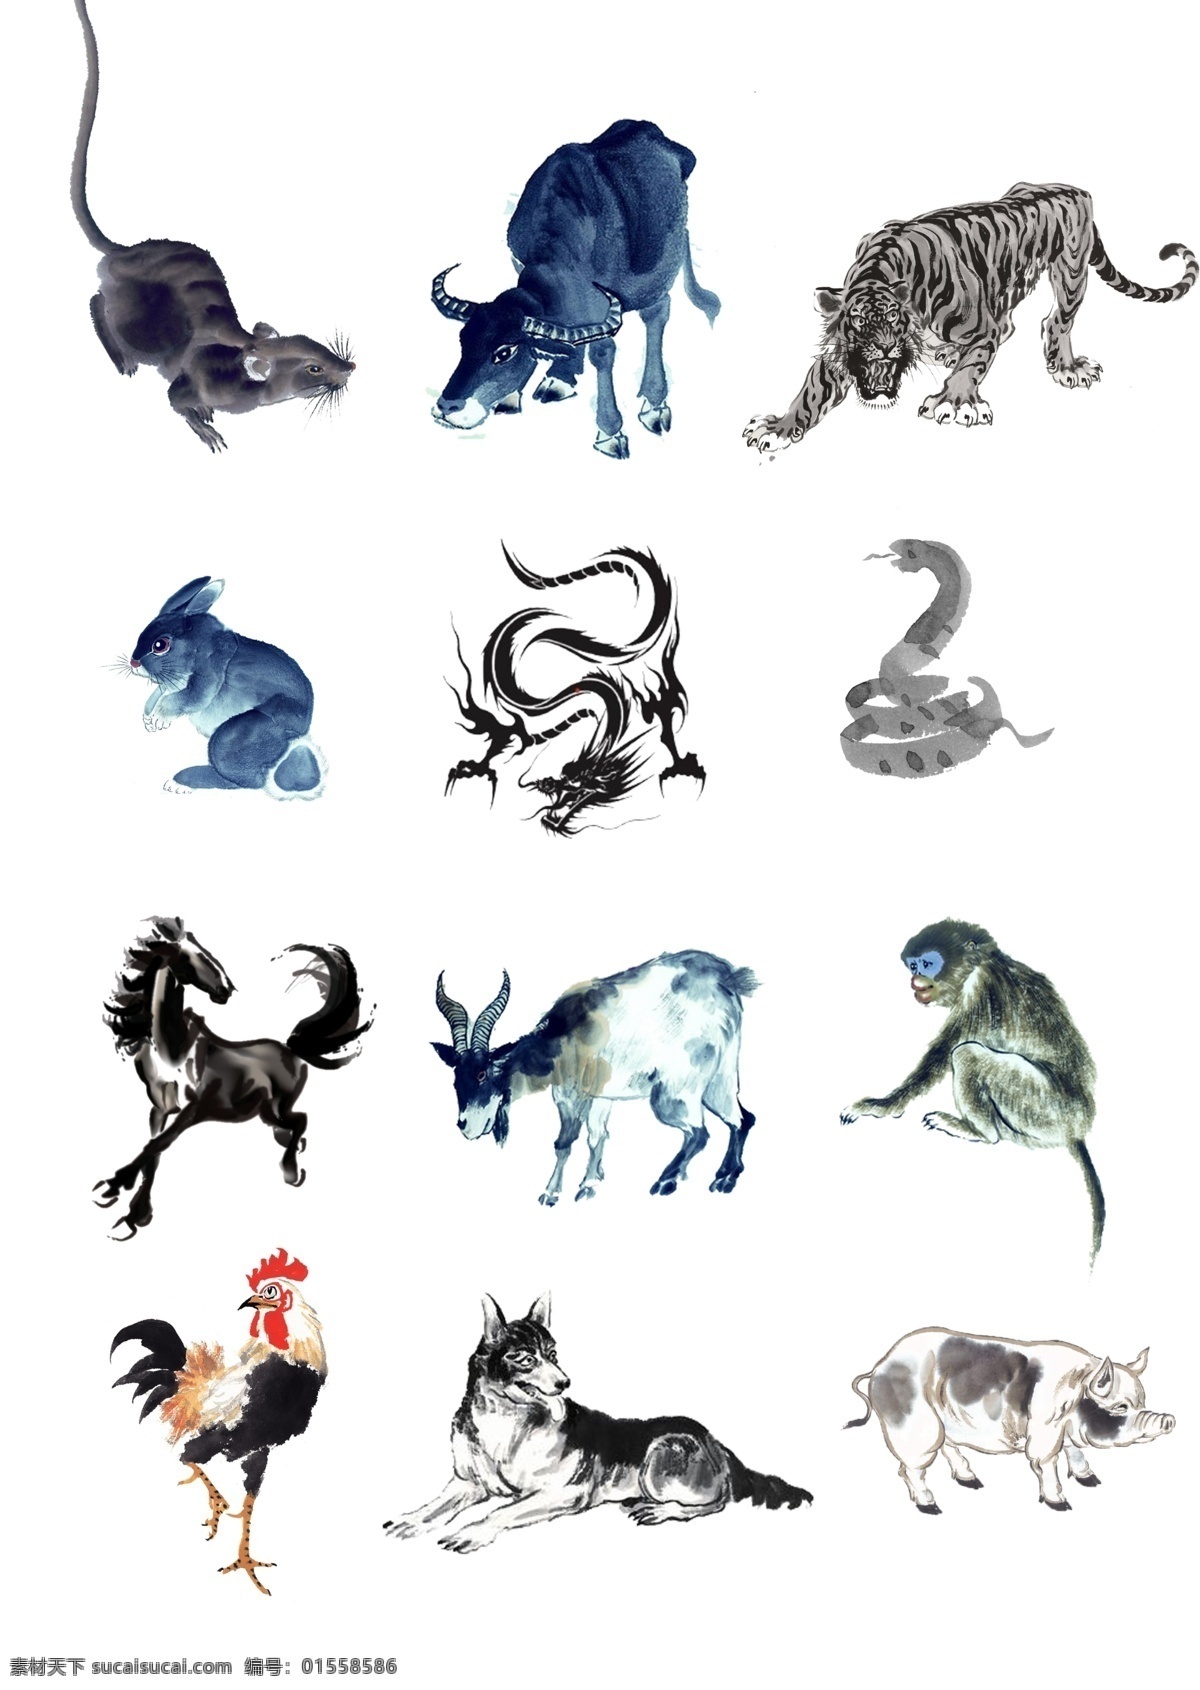 生肖 水墨画 12生肖 中国风 动物水墨 国画动物 海报素材